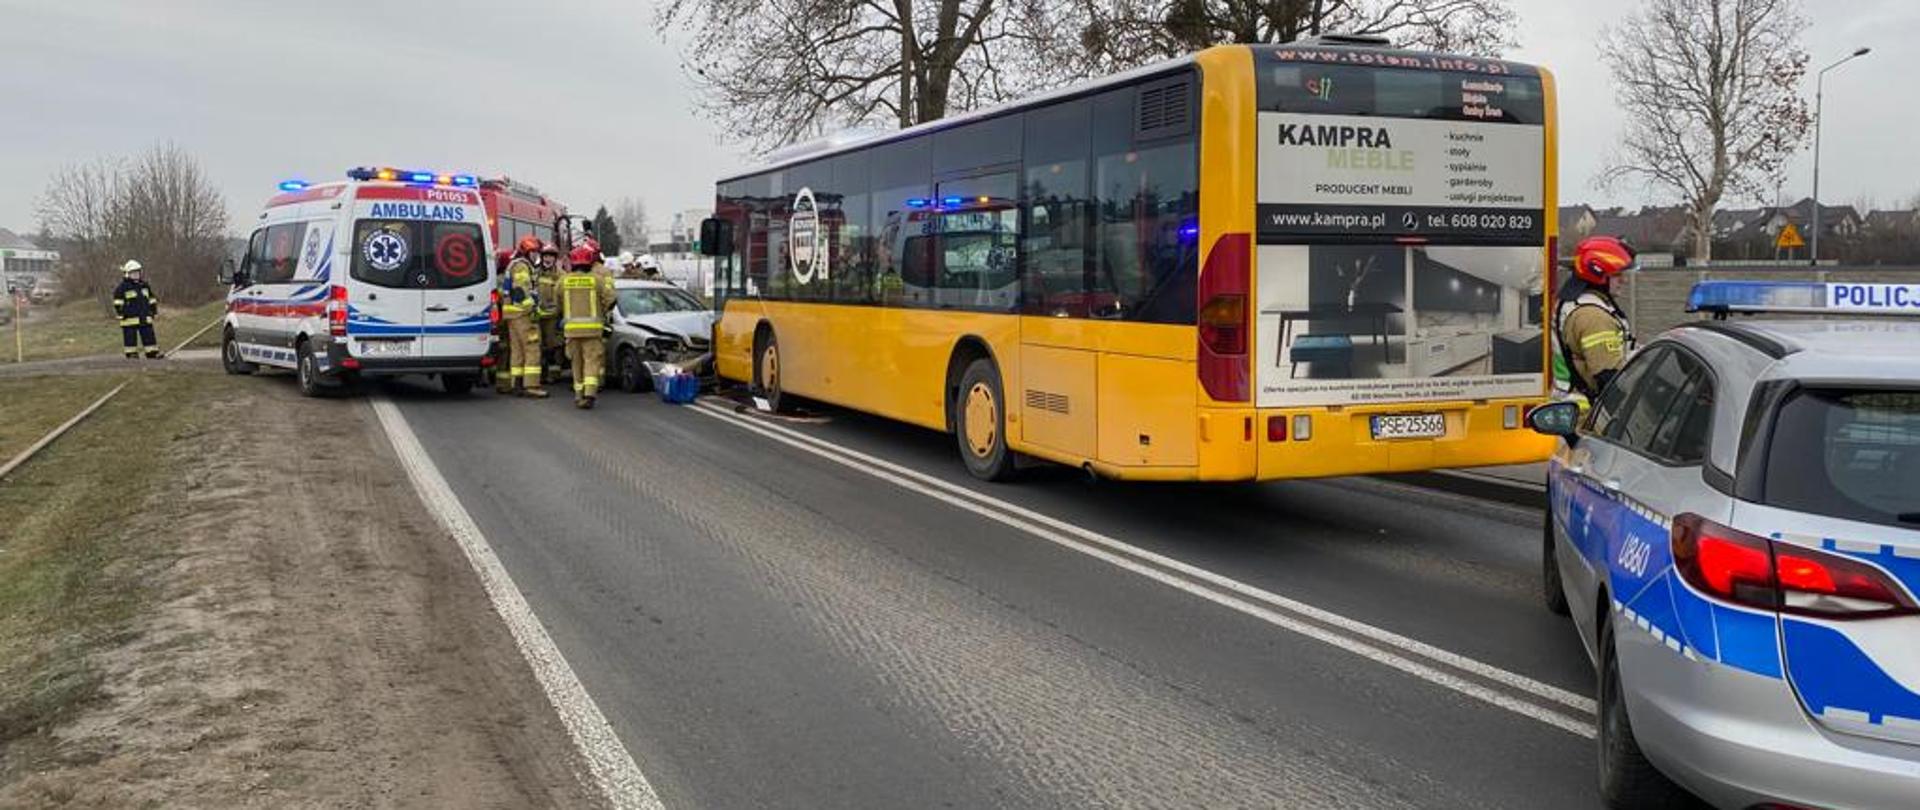 Na zdjęciu autobus koloru żółtego oraz samochód osobowy koloru srebrnego zderzone razem czołowo , przed autobusem samochód Policji, obok samochodu osobowego karetka, strażacy w czerwonych i białych hełmach stoją przy rozbitych autach